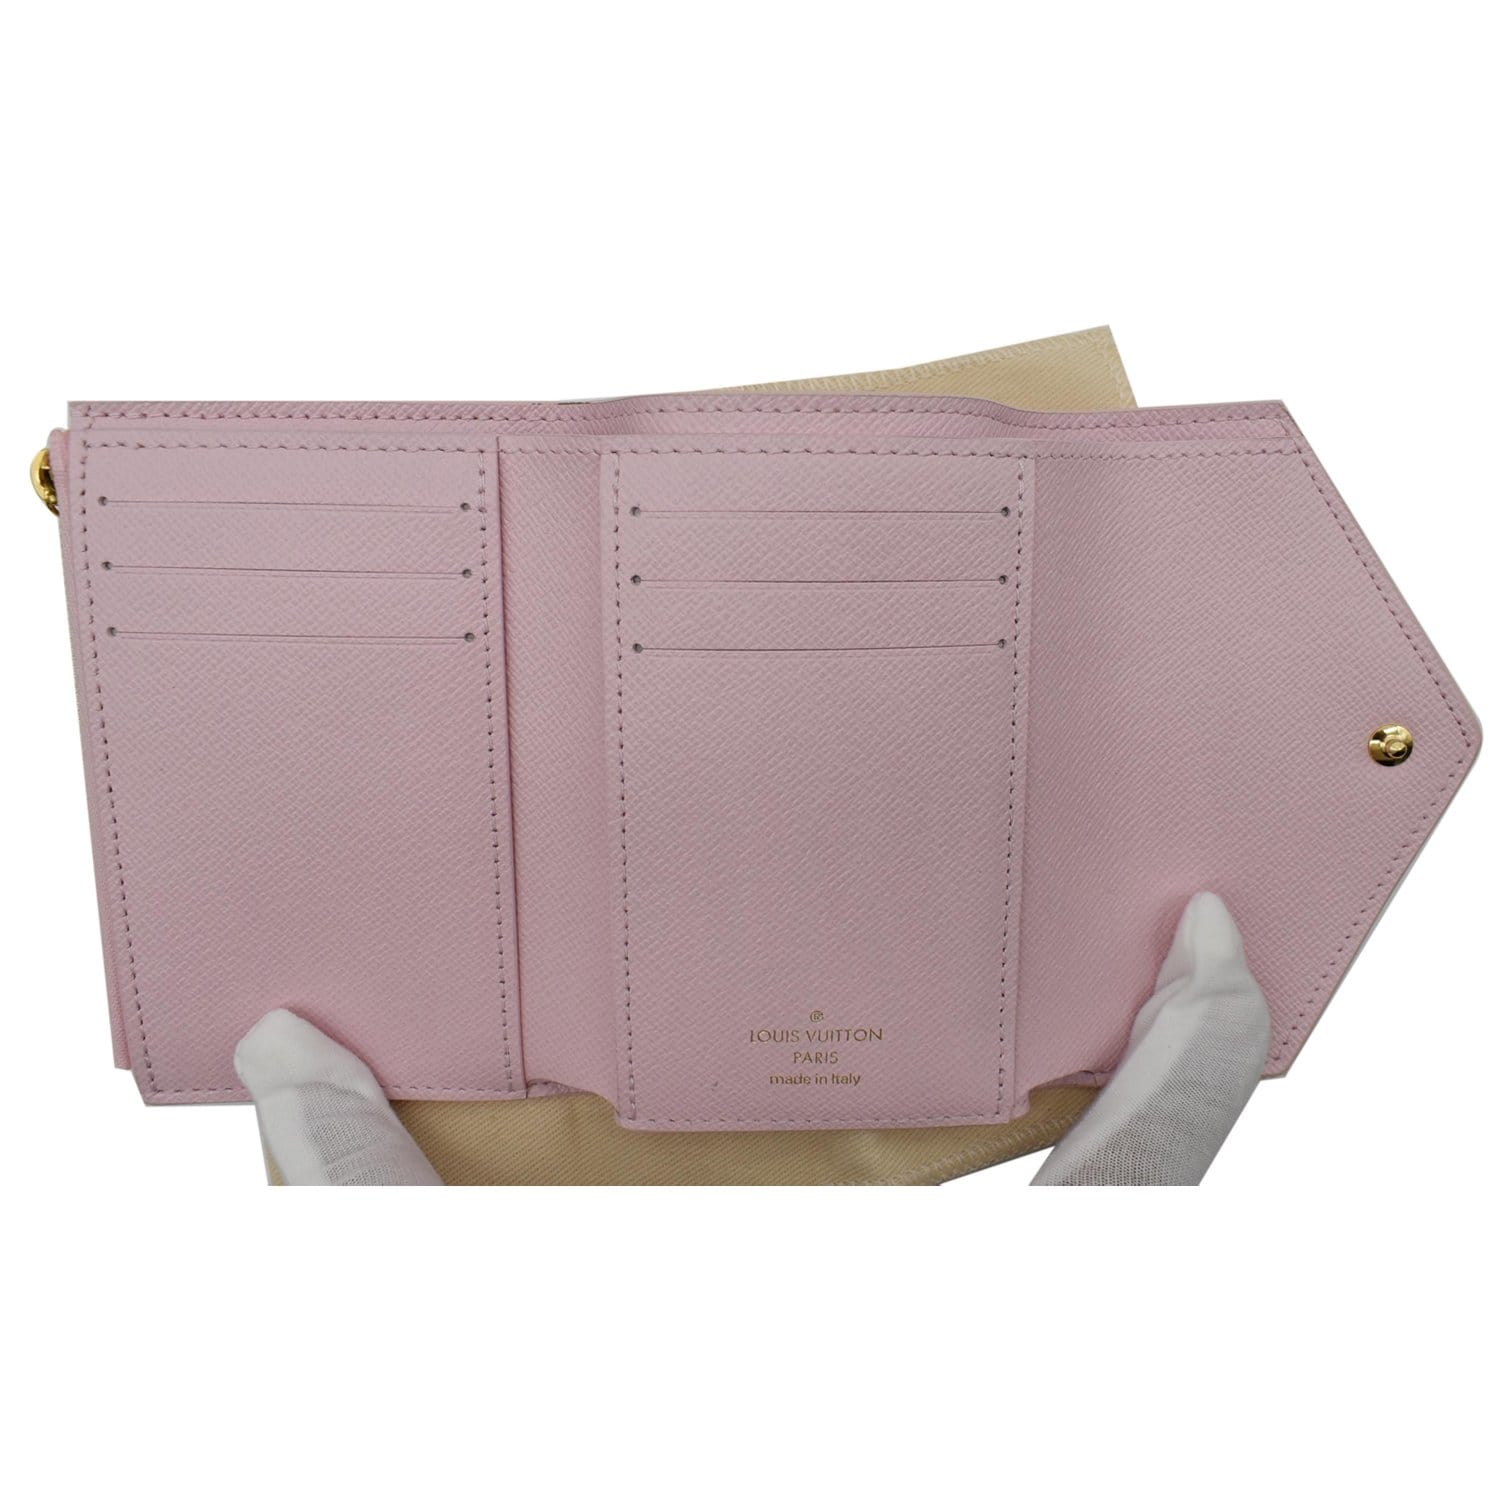 Louis Vuitton - Authenticated Victorine Wallet - Cotton Pink Plain for Women, Good Condition